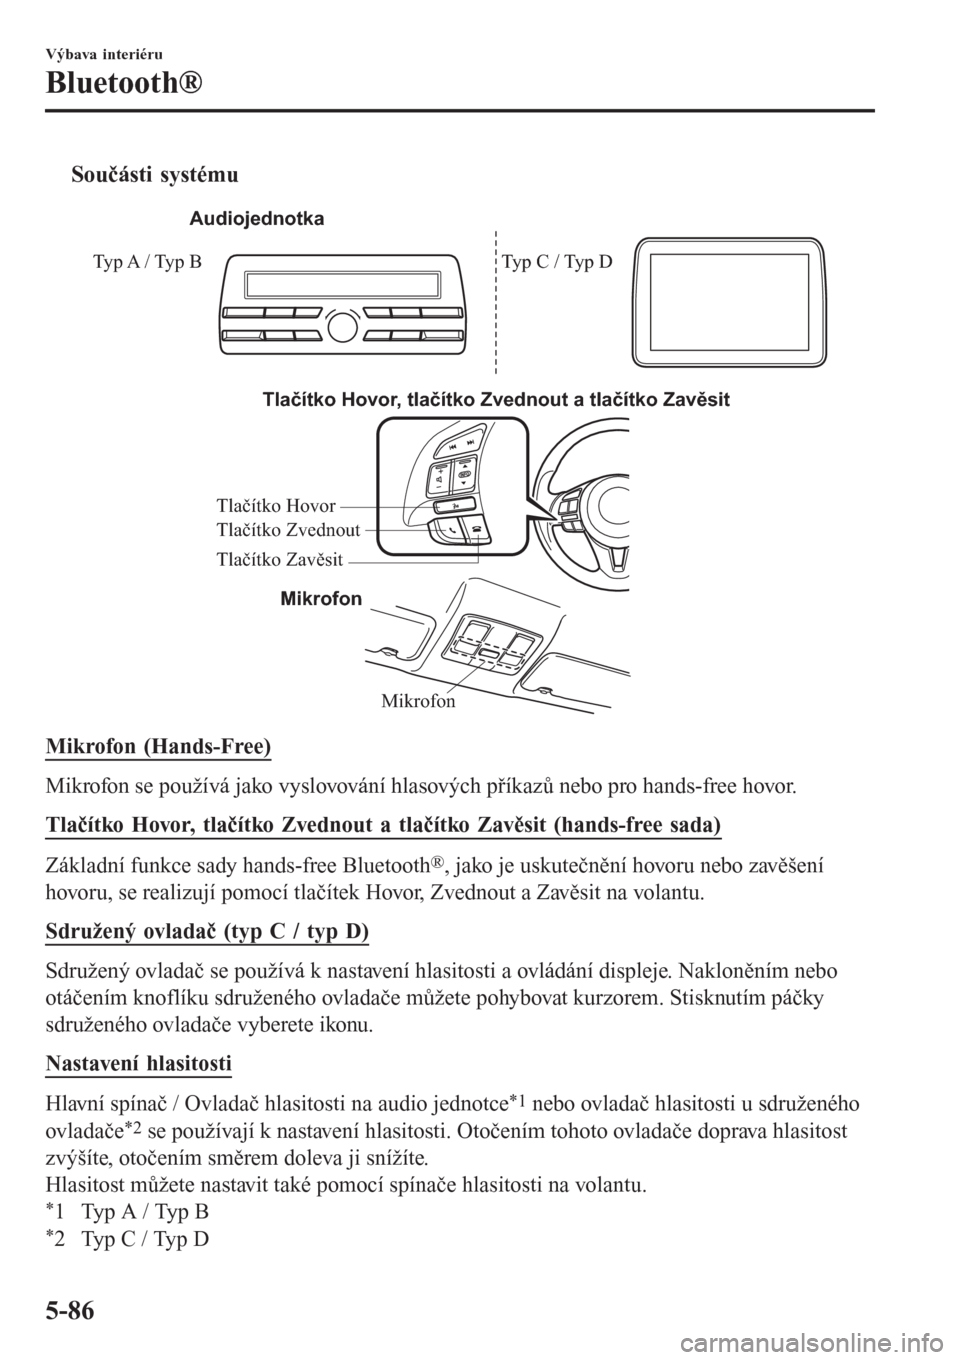 MAZDA MODEL CX-3 2015  Návod k obsluze (in Czech) tSoučásti systému
Mikrofon Tlačítko Hovor, tlačítko Zvednout a tlačítko Zavěsit
Mikrofon Tlačítko Hovor
Tlačítko Zavěsit Tlačítko Zvednout
Audiojednotka
Typ A / Typ B Typ C / Typ D
Mi